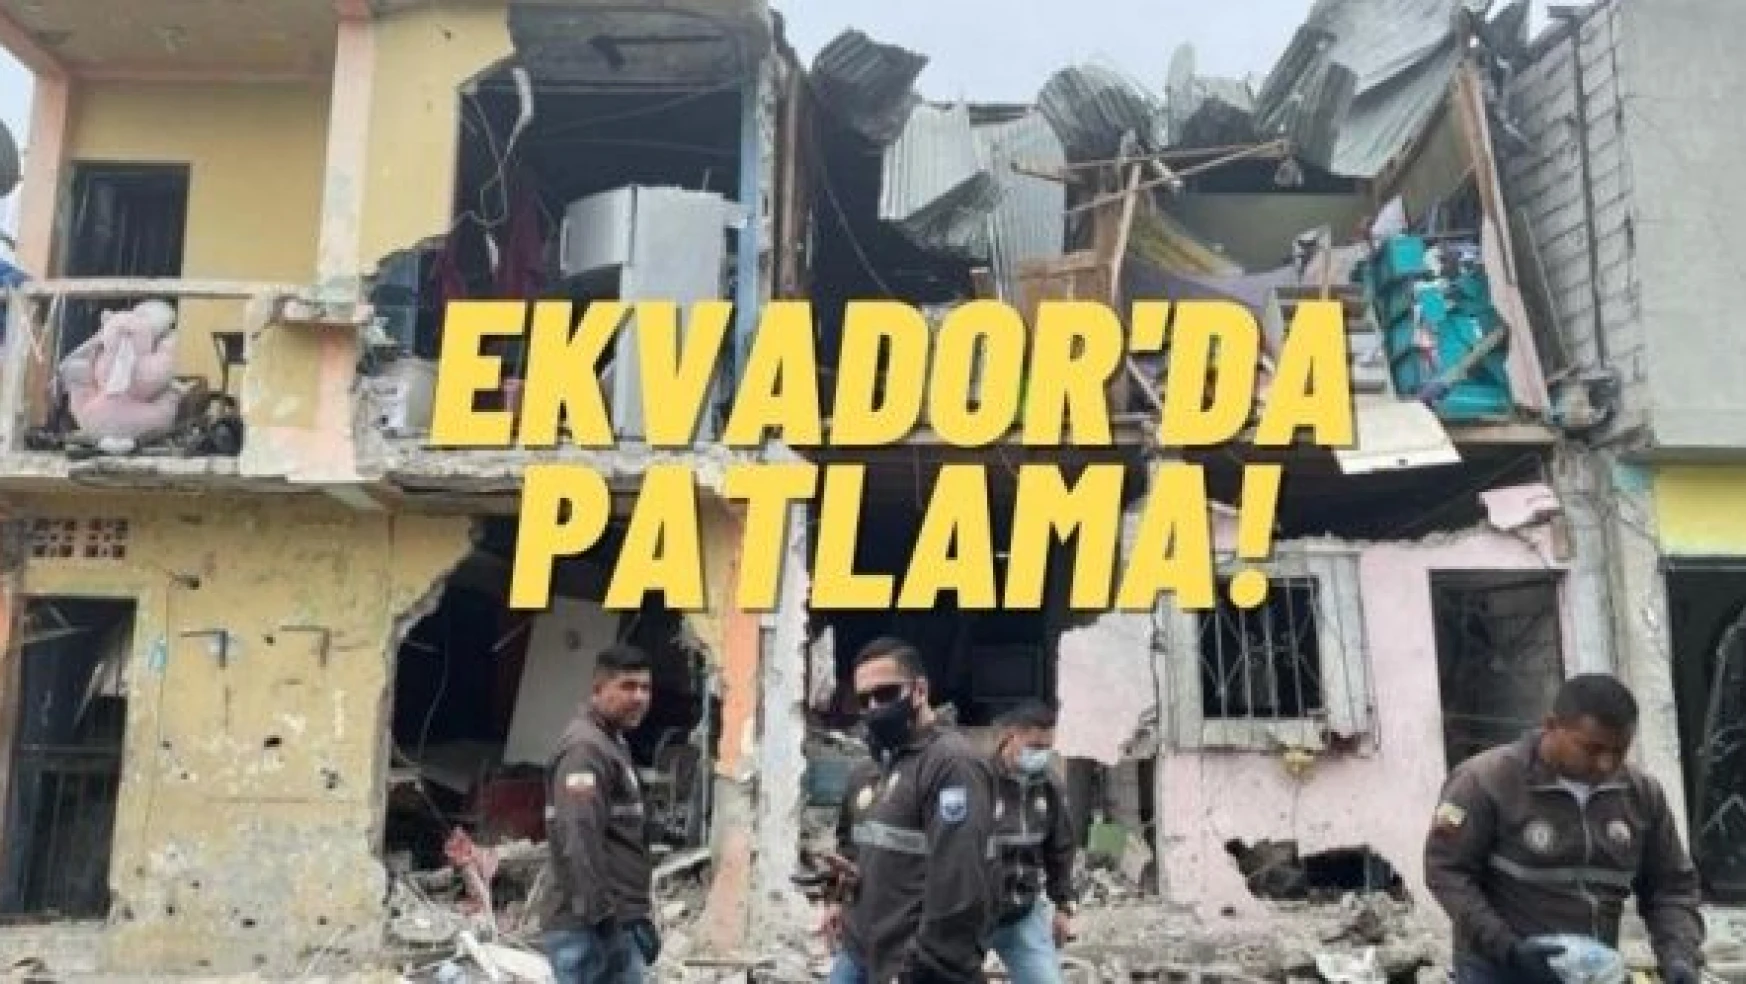 Ekvador'da patlama : 5 ölü, 16 yaralı